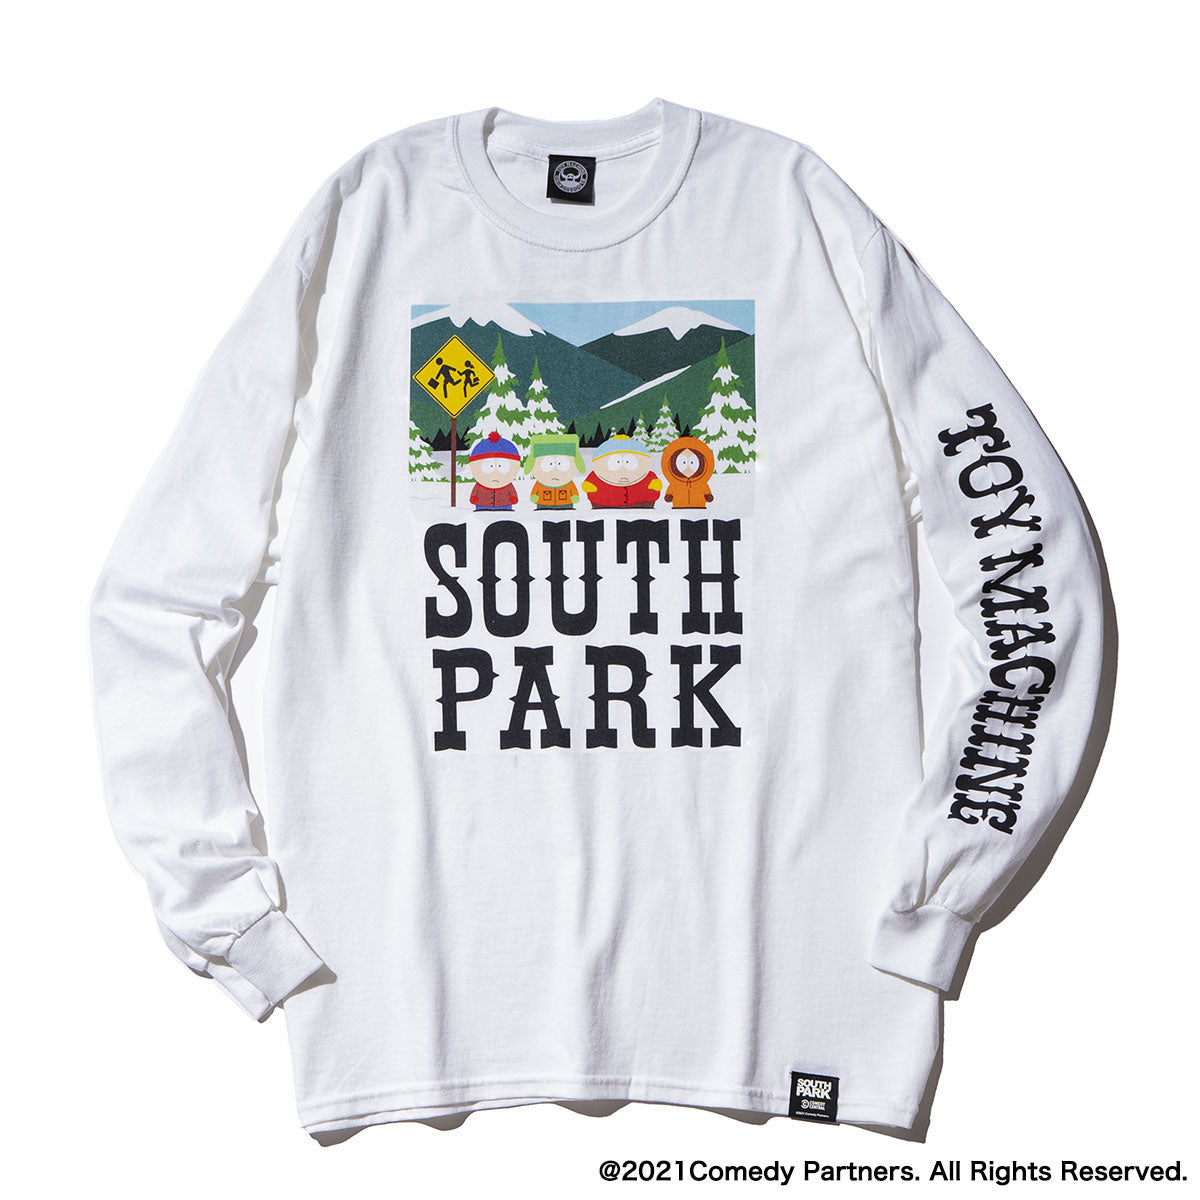 国内正規新品 【超超激レア】South Park Tシャツ 1度きりの限定生産品 